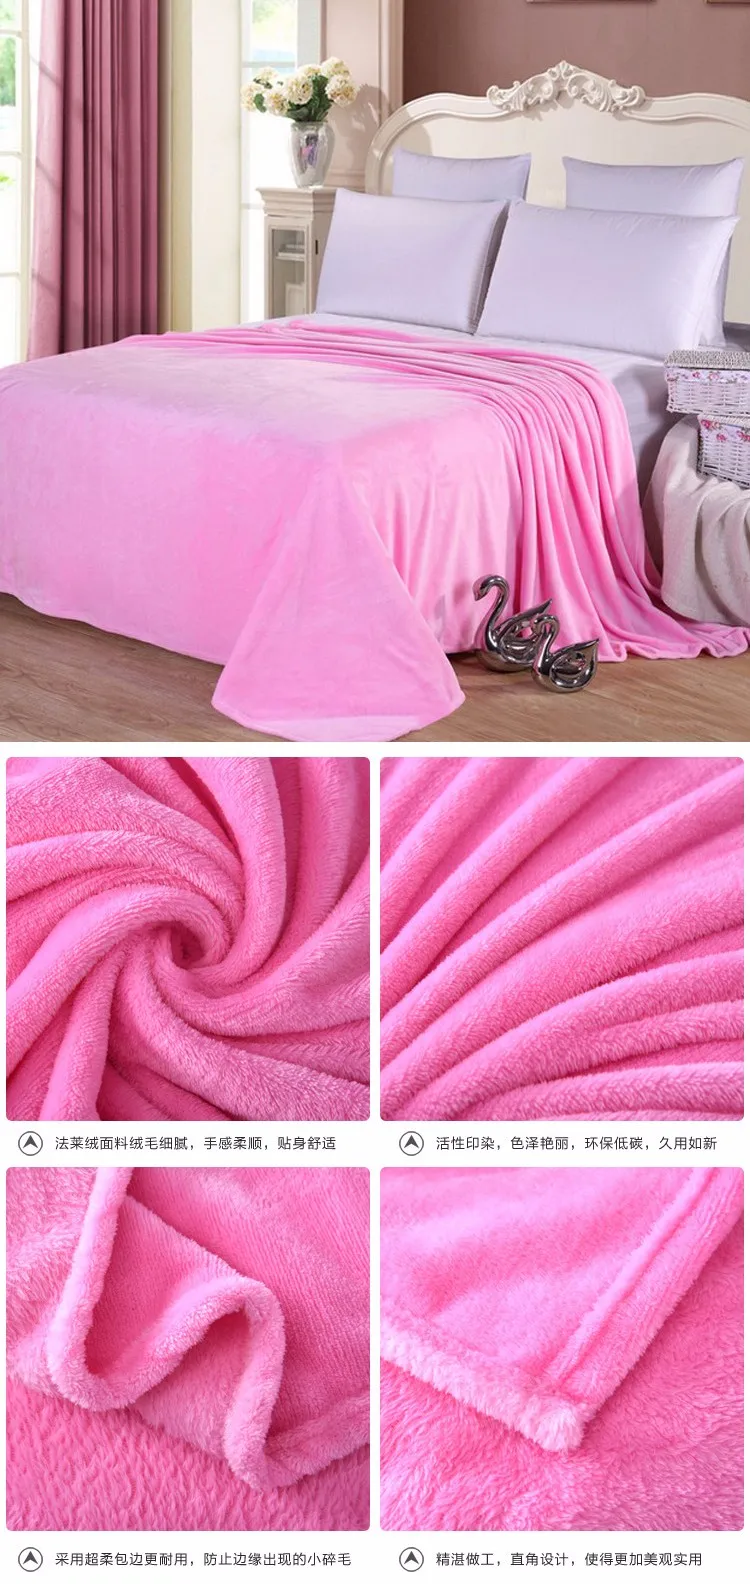 Горячее предложение, домашний текстиль, фланелевое одеяло, розовый плед, супер теплое мягкое одеяло, s плед на диван/кровать/самолет, путешествия, лоскутное, одноцветное покрывало